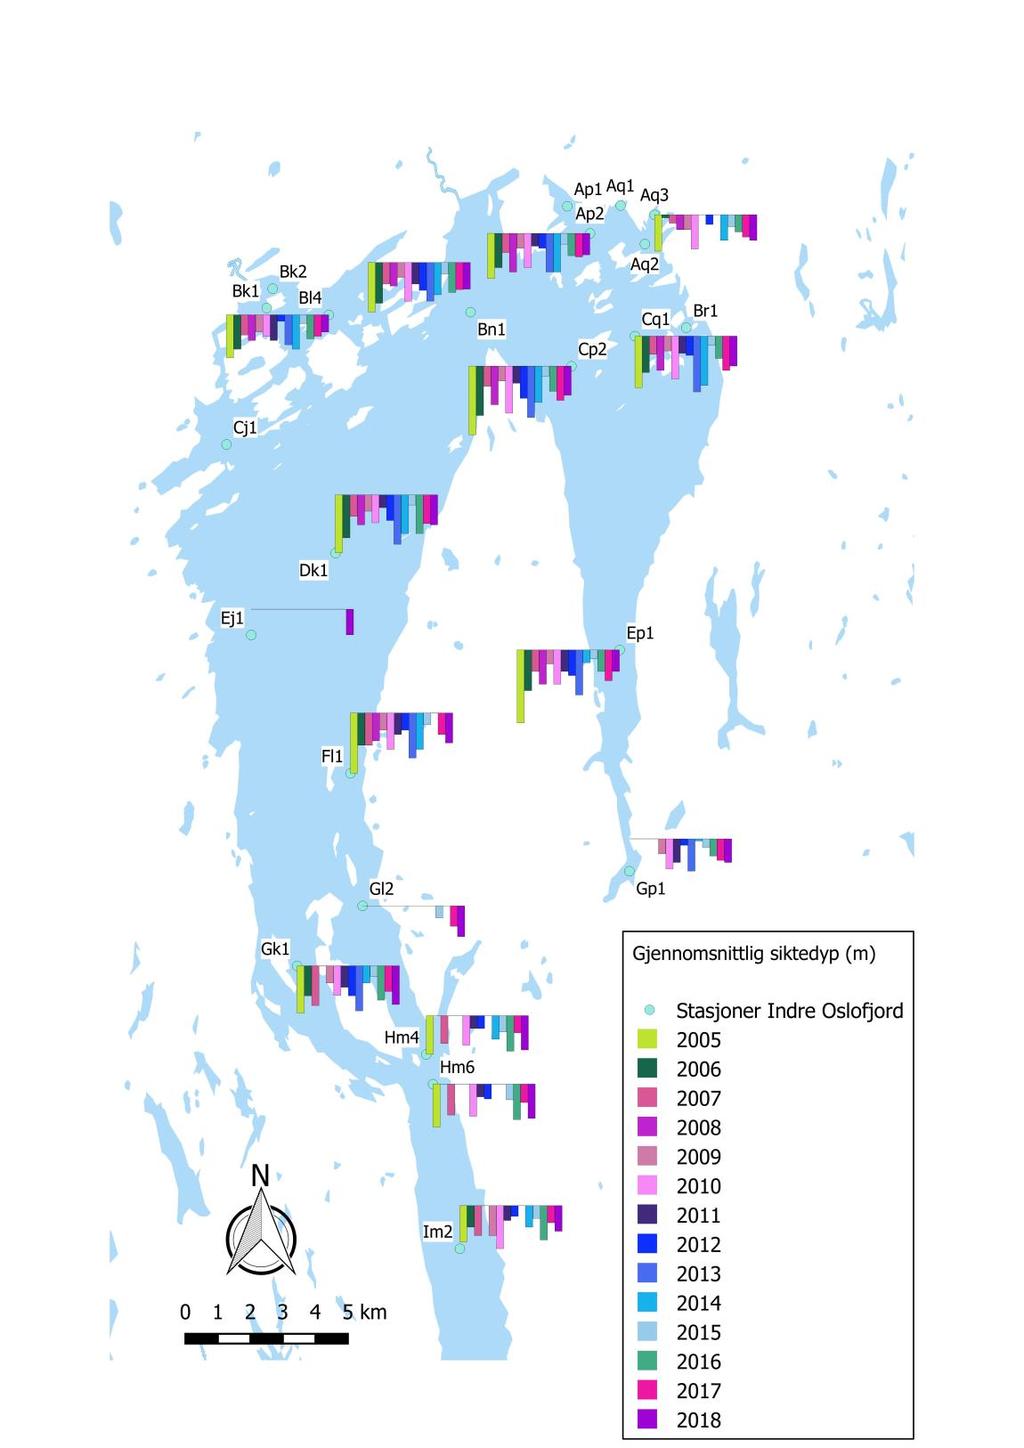 Siktedypmålinger for oktober måned i 2018 og foregående år Plottede data på kartet til venstre viser gjennomsnittlige oktober-målinger ved utvalgte stasjoner i Indre Oslofjord (i perioden 2005-2018).